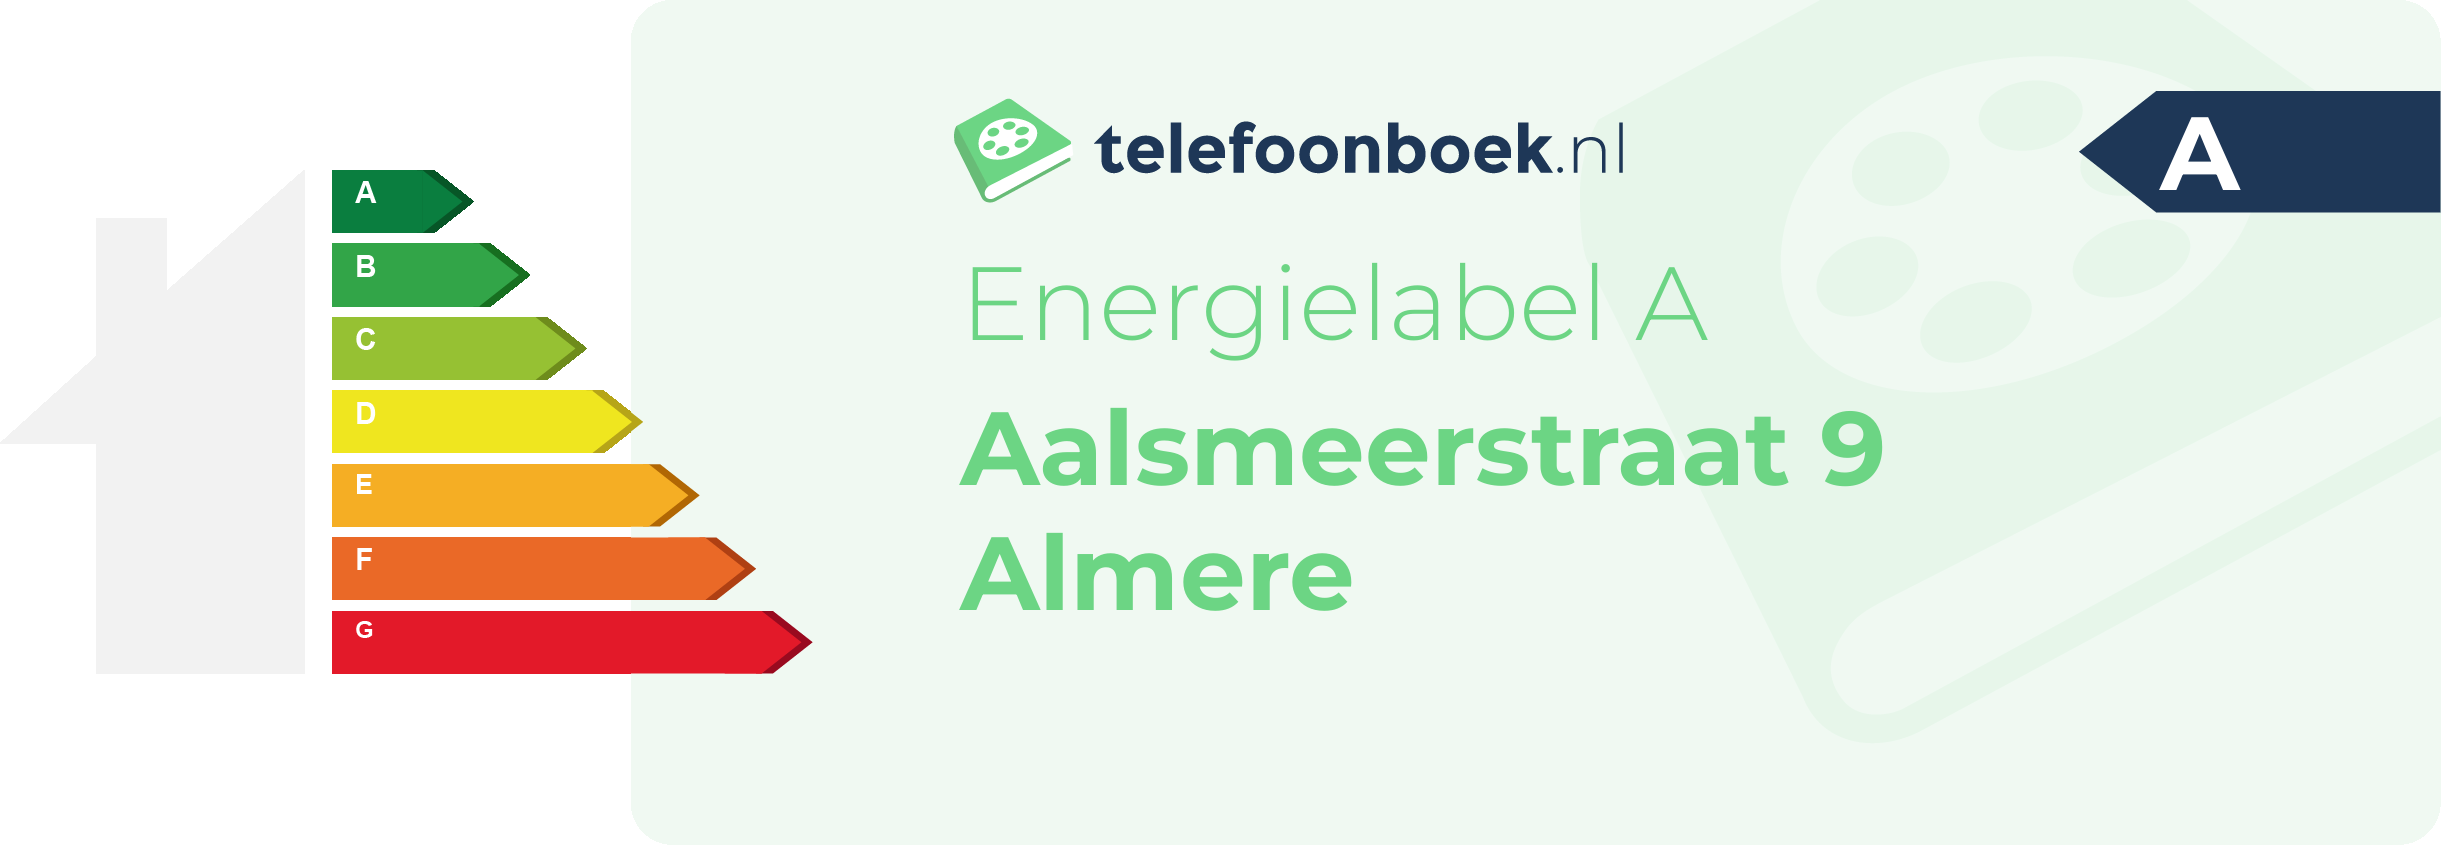 Energielabel Aalsmeerstraat 9 Almere